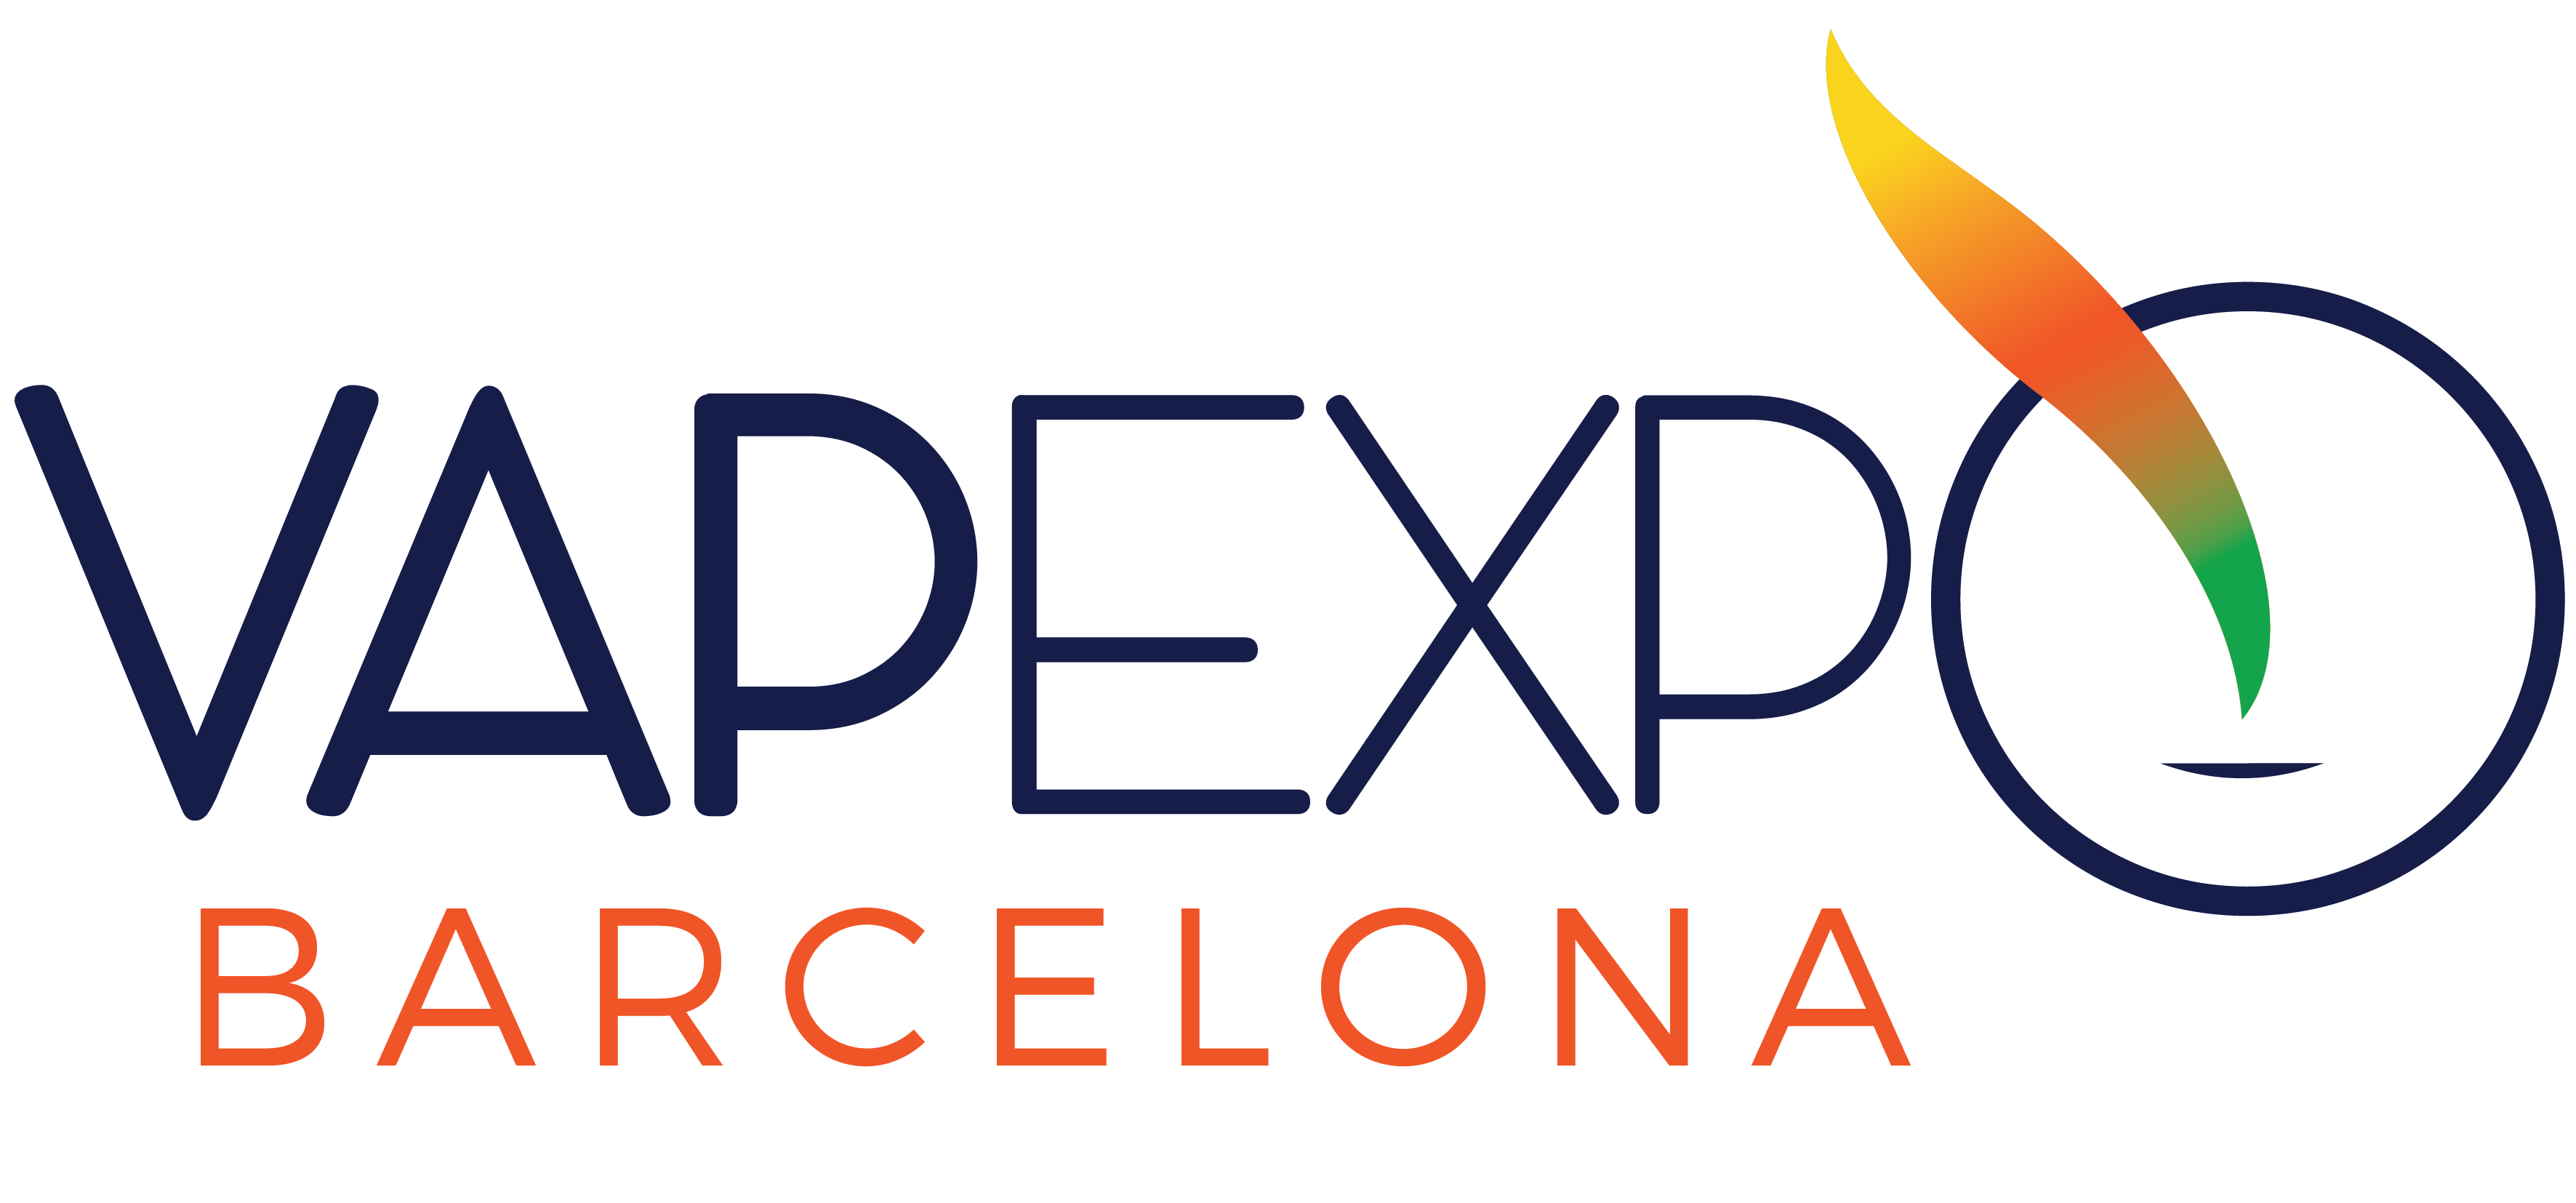 VAPEXPO in Barcelona